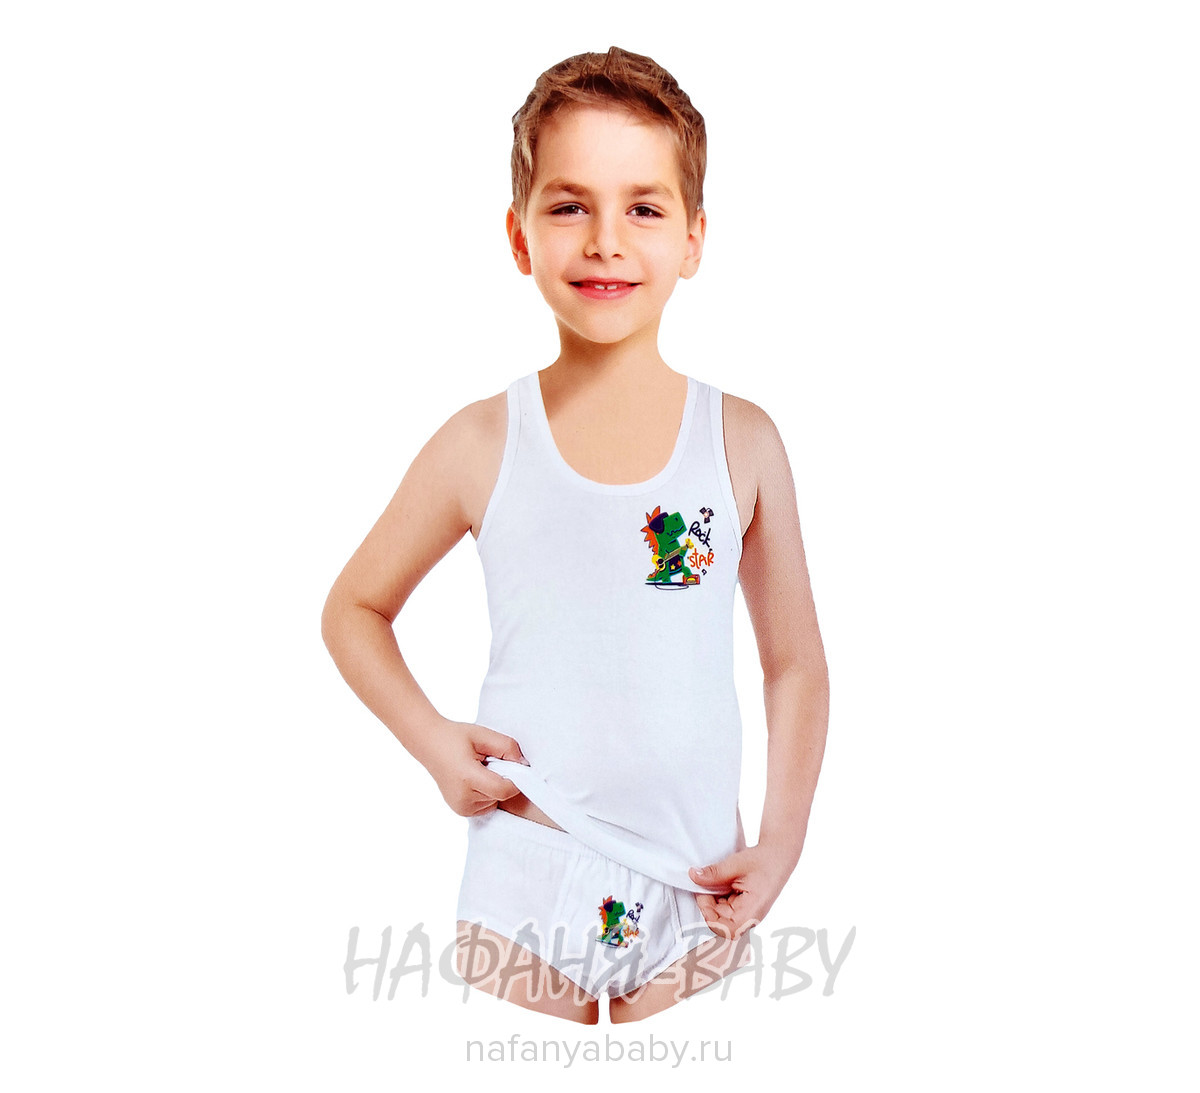 Комплект нижнего белья для мальчика EXEN Kids, купить в интернет магазине Нафаня. арт: 2000-6.